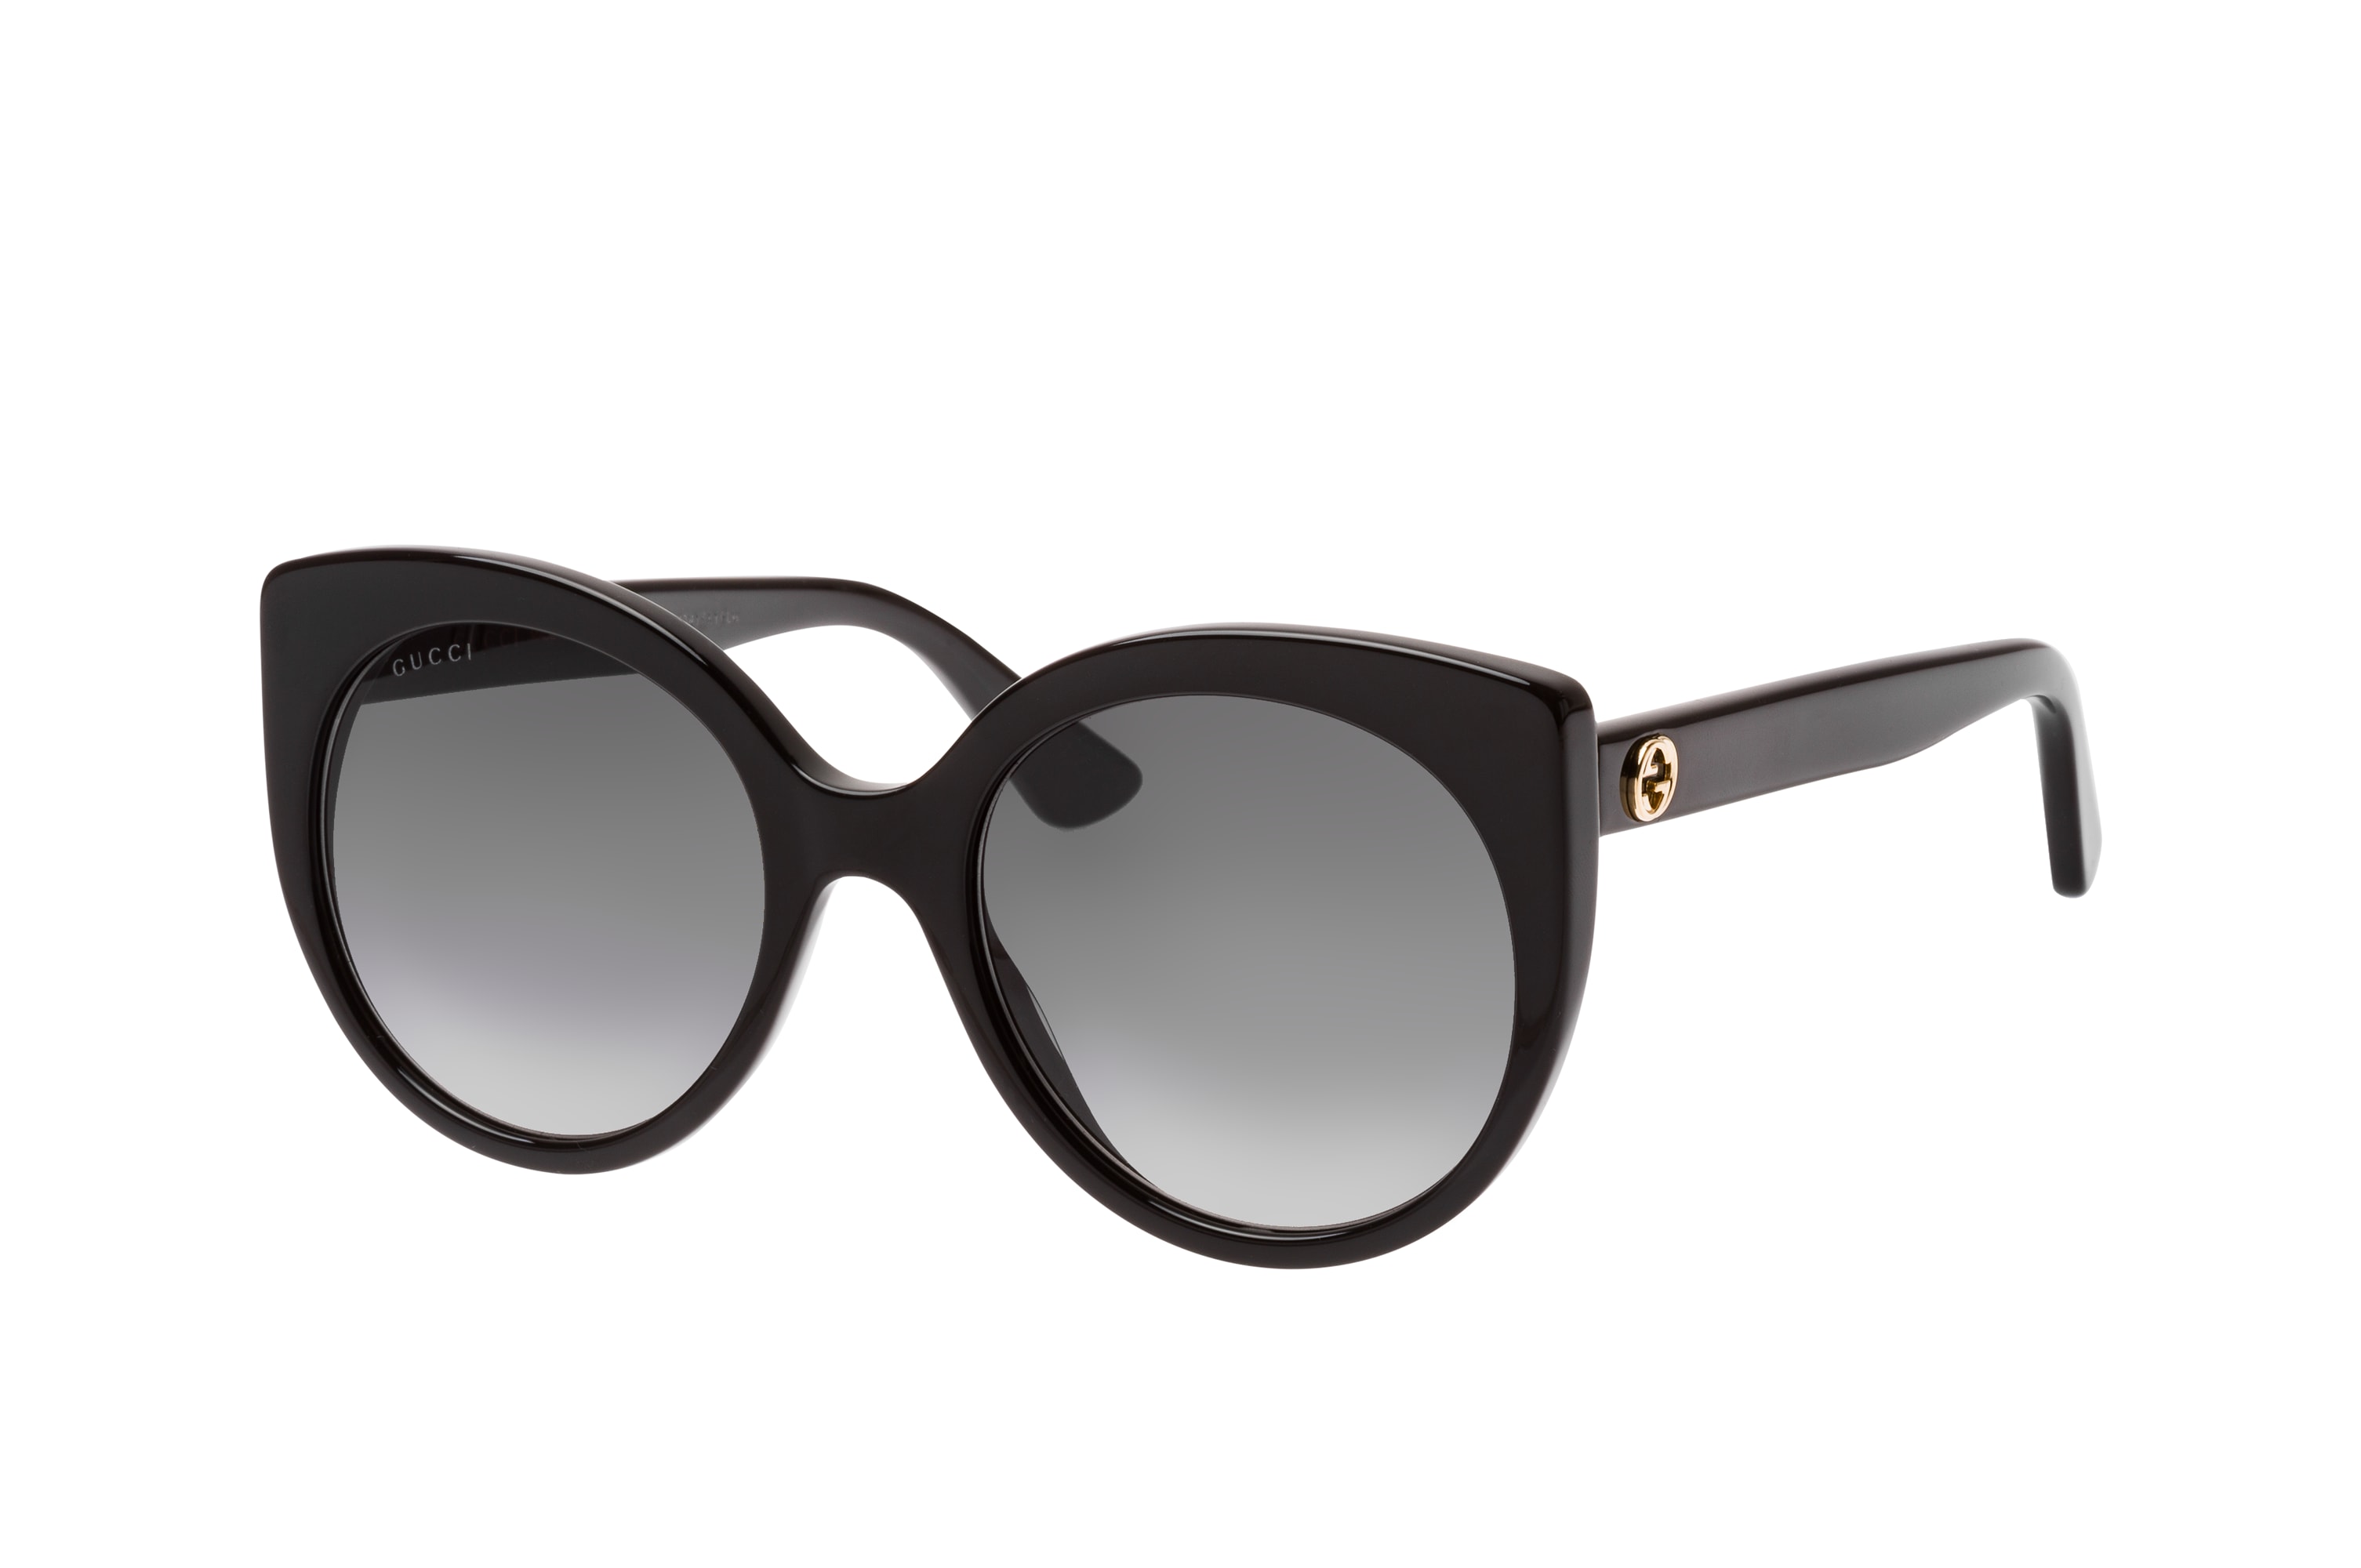 Buy Gucci GG 0325S Sunglasses